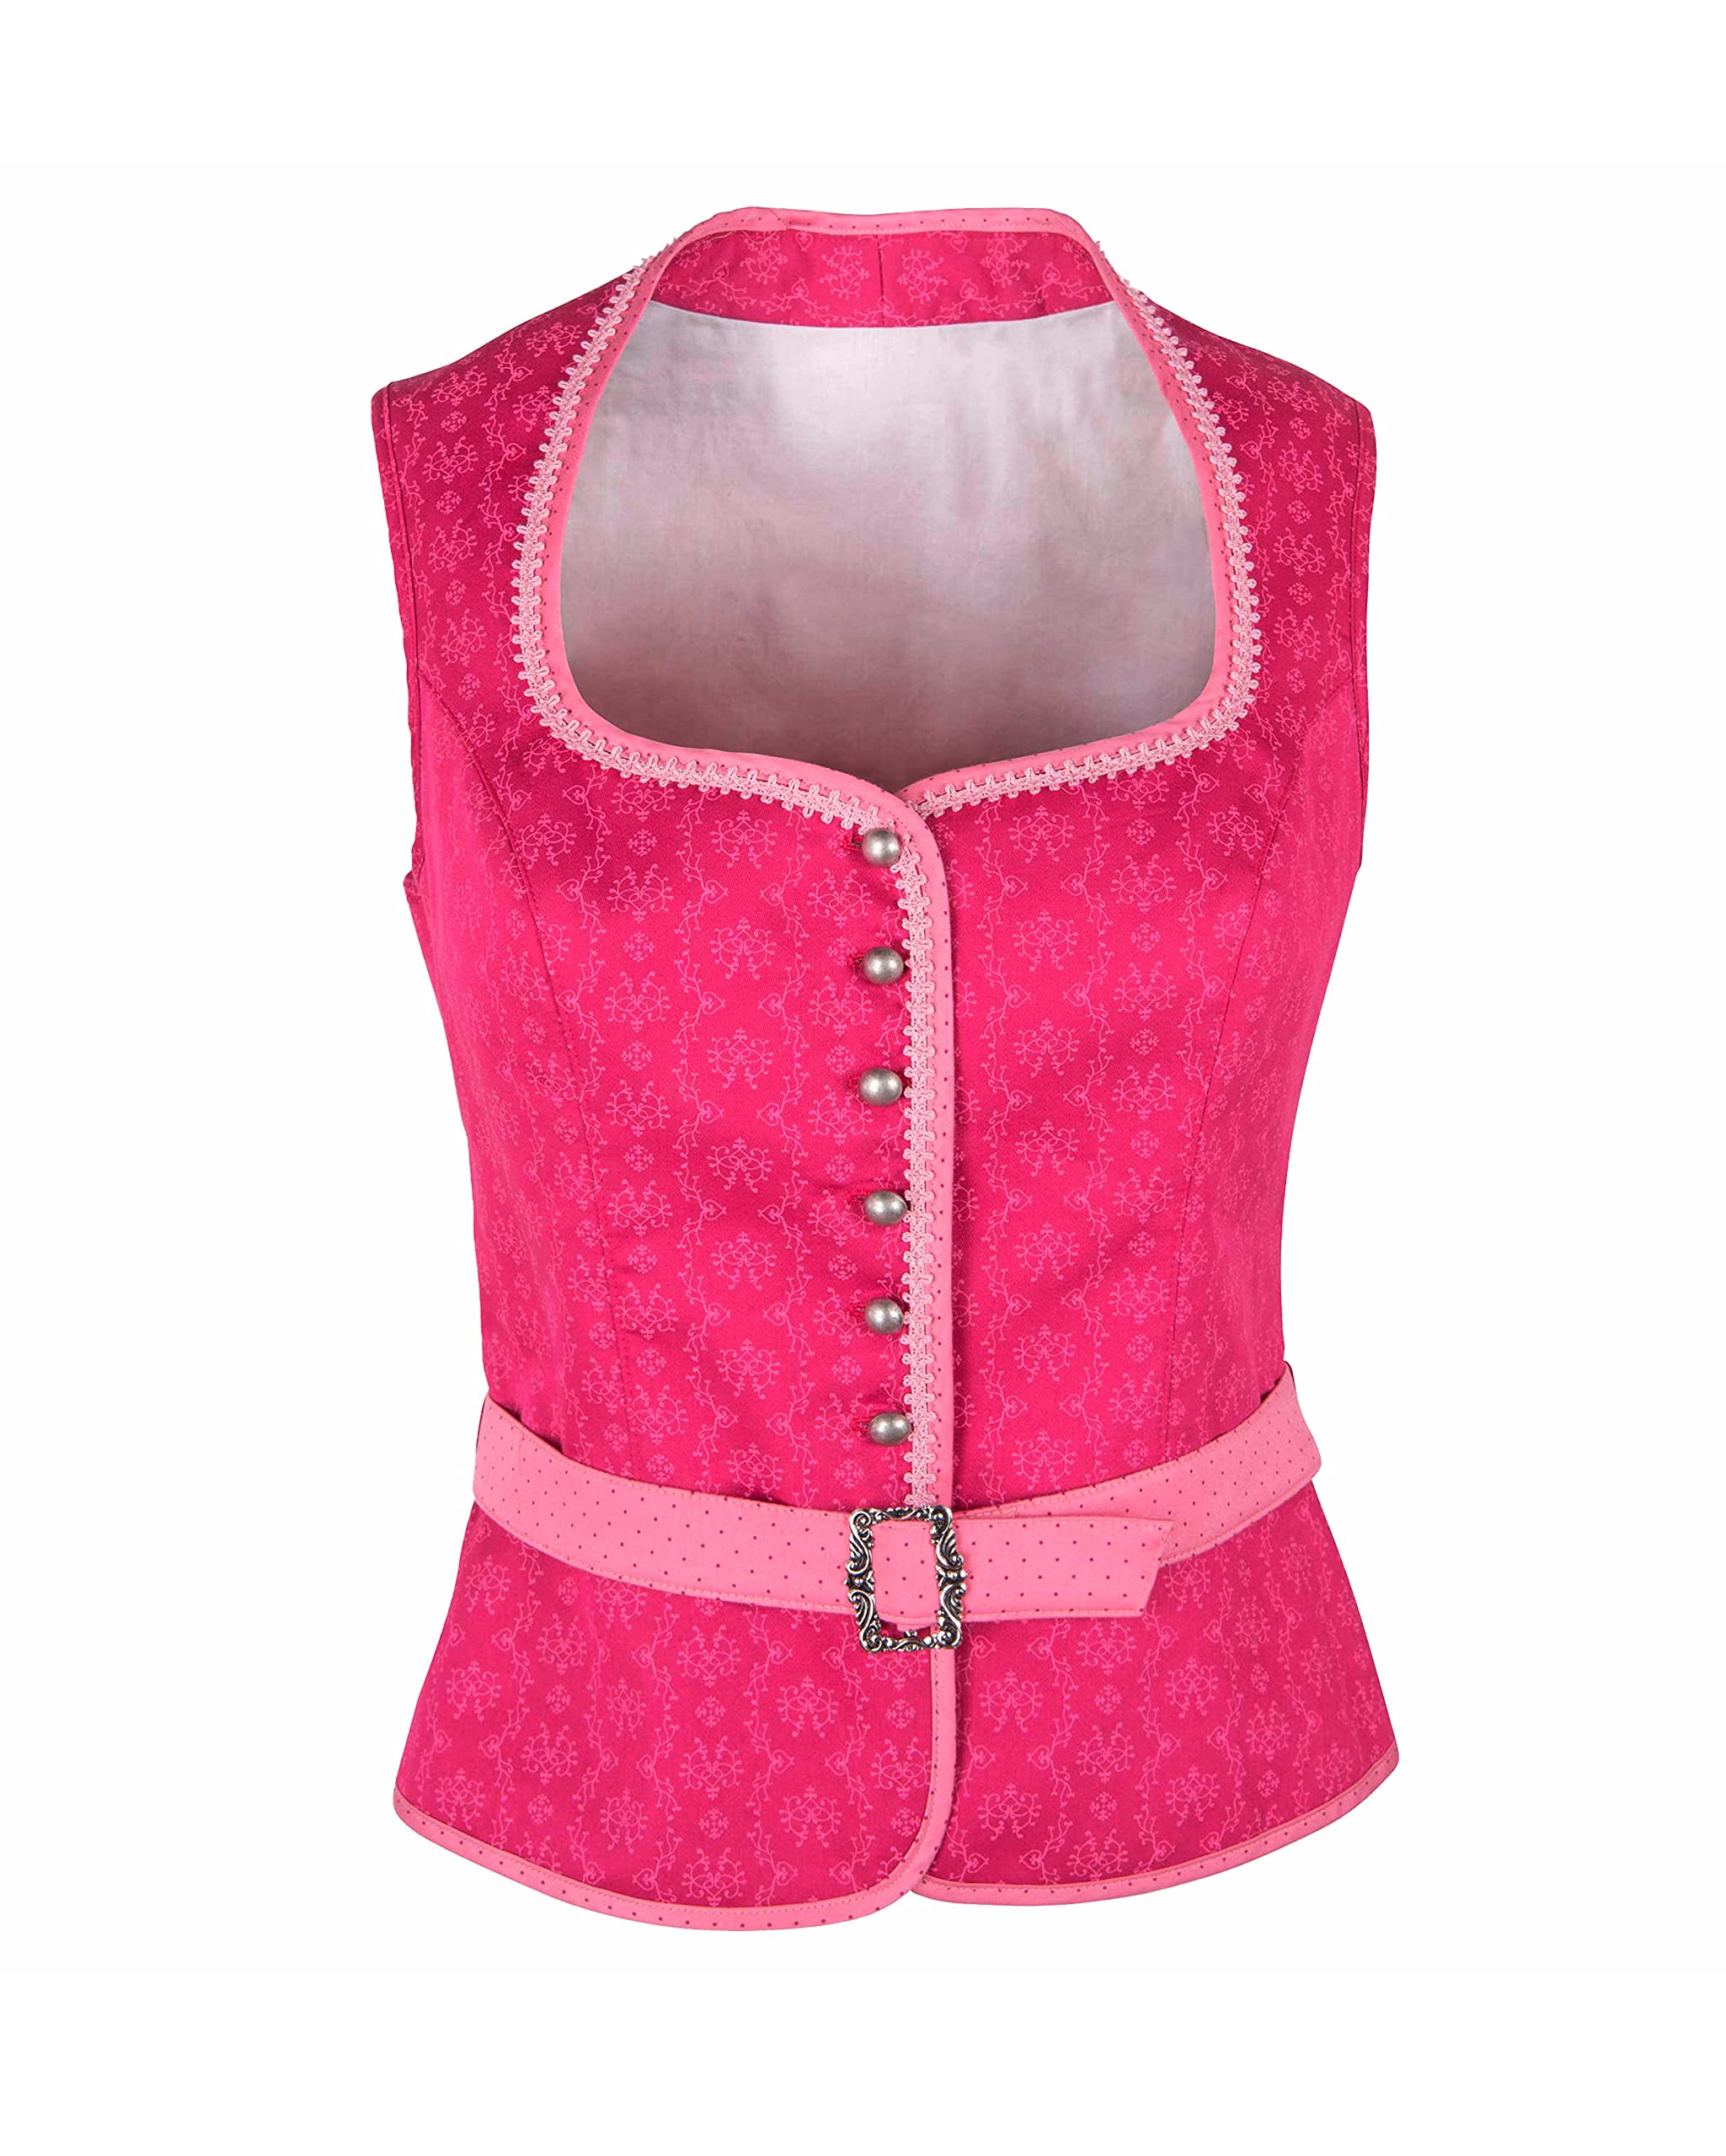 Ramona Lippert® - Damen Dirndl Bluse Nicole 44 Pink Corsage mit Schneewittchenkragen und Gürtelschnalle - Trachtenbluse - Blusen für Trachten z.B. zum Oktoberfest